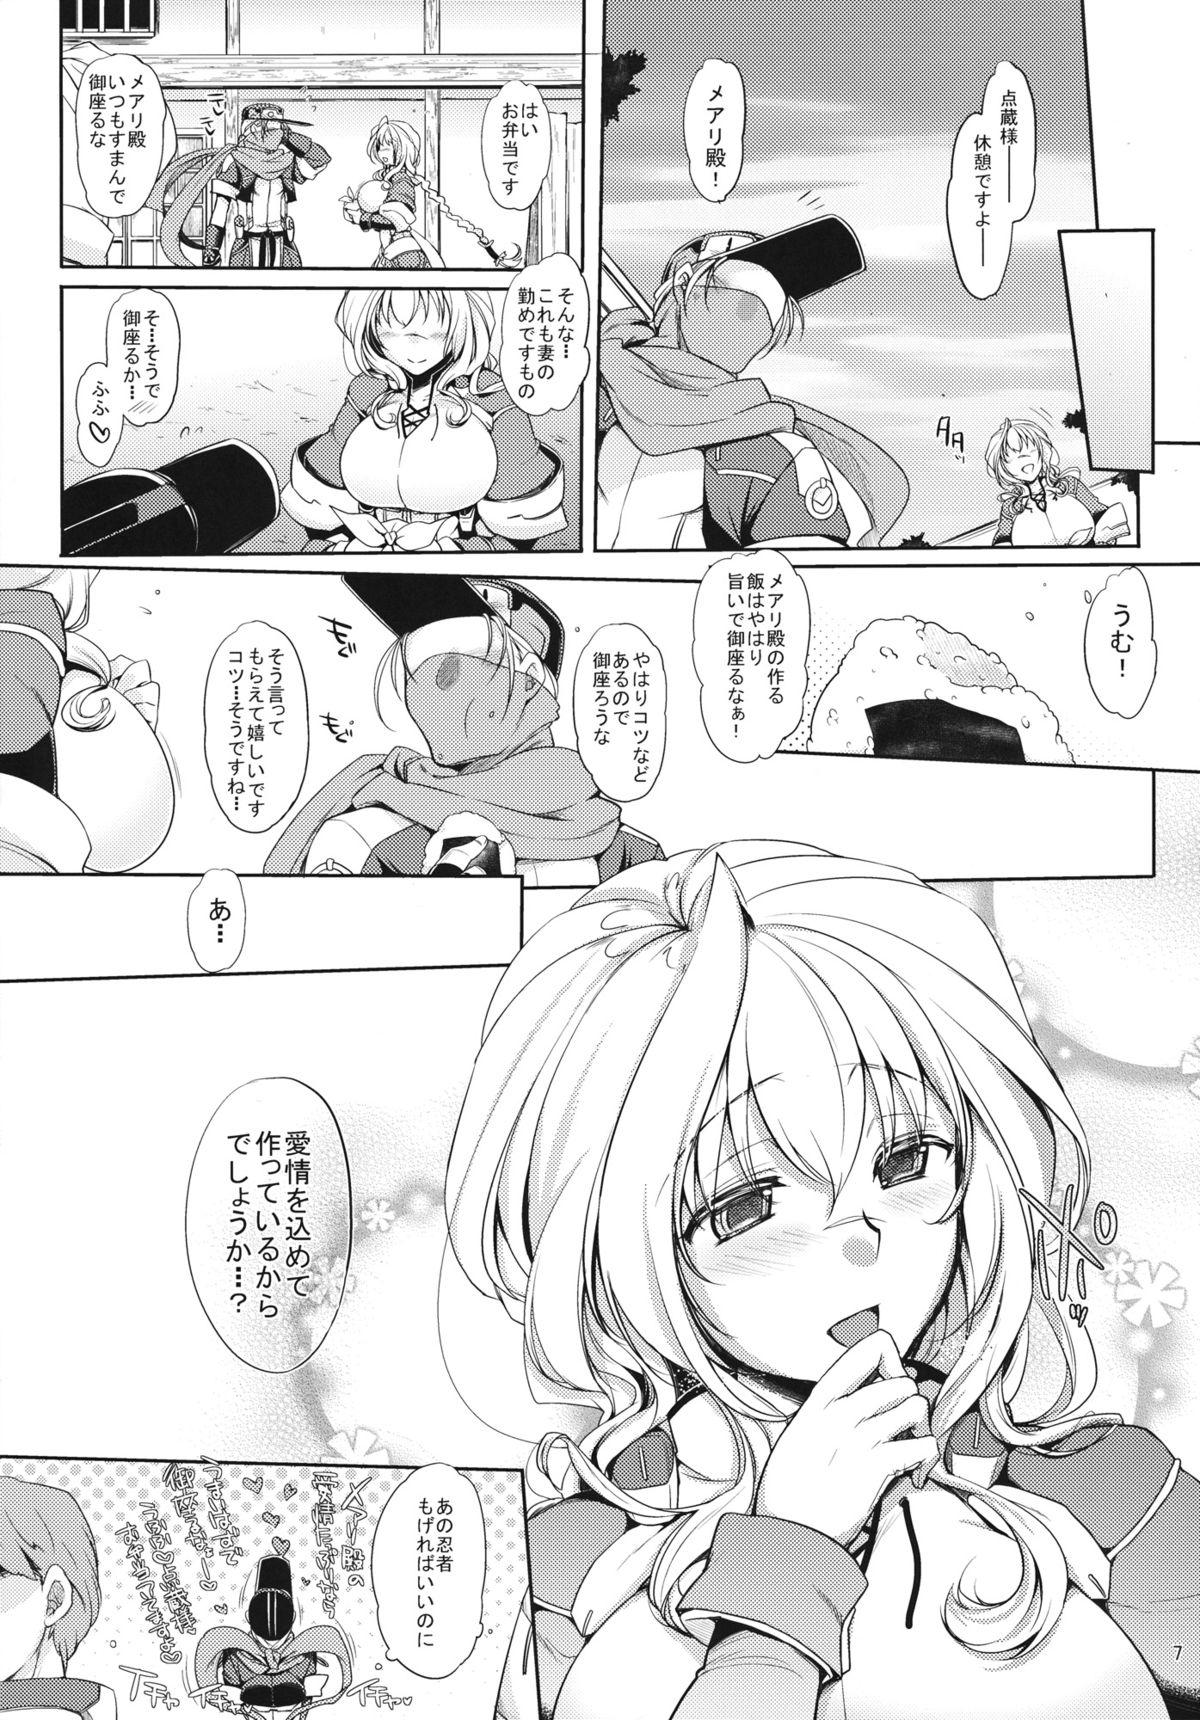 Athletic Water lily - Kyoukai senjou no horizon Realsex - Page 6